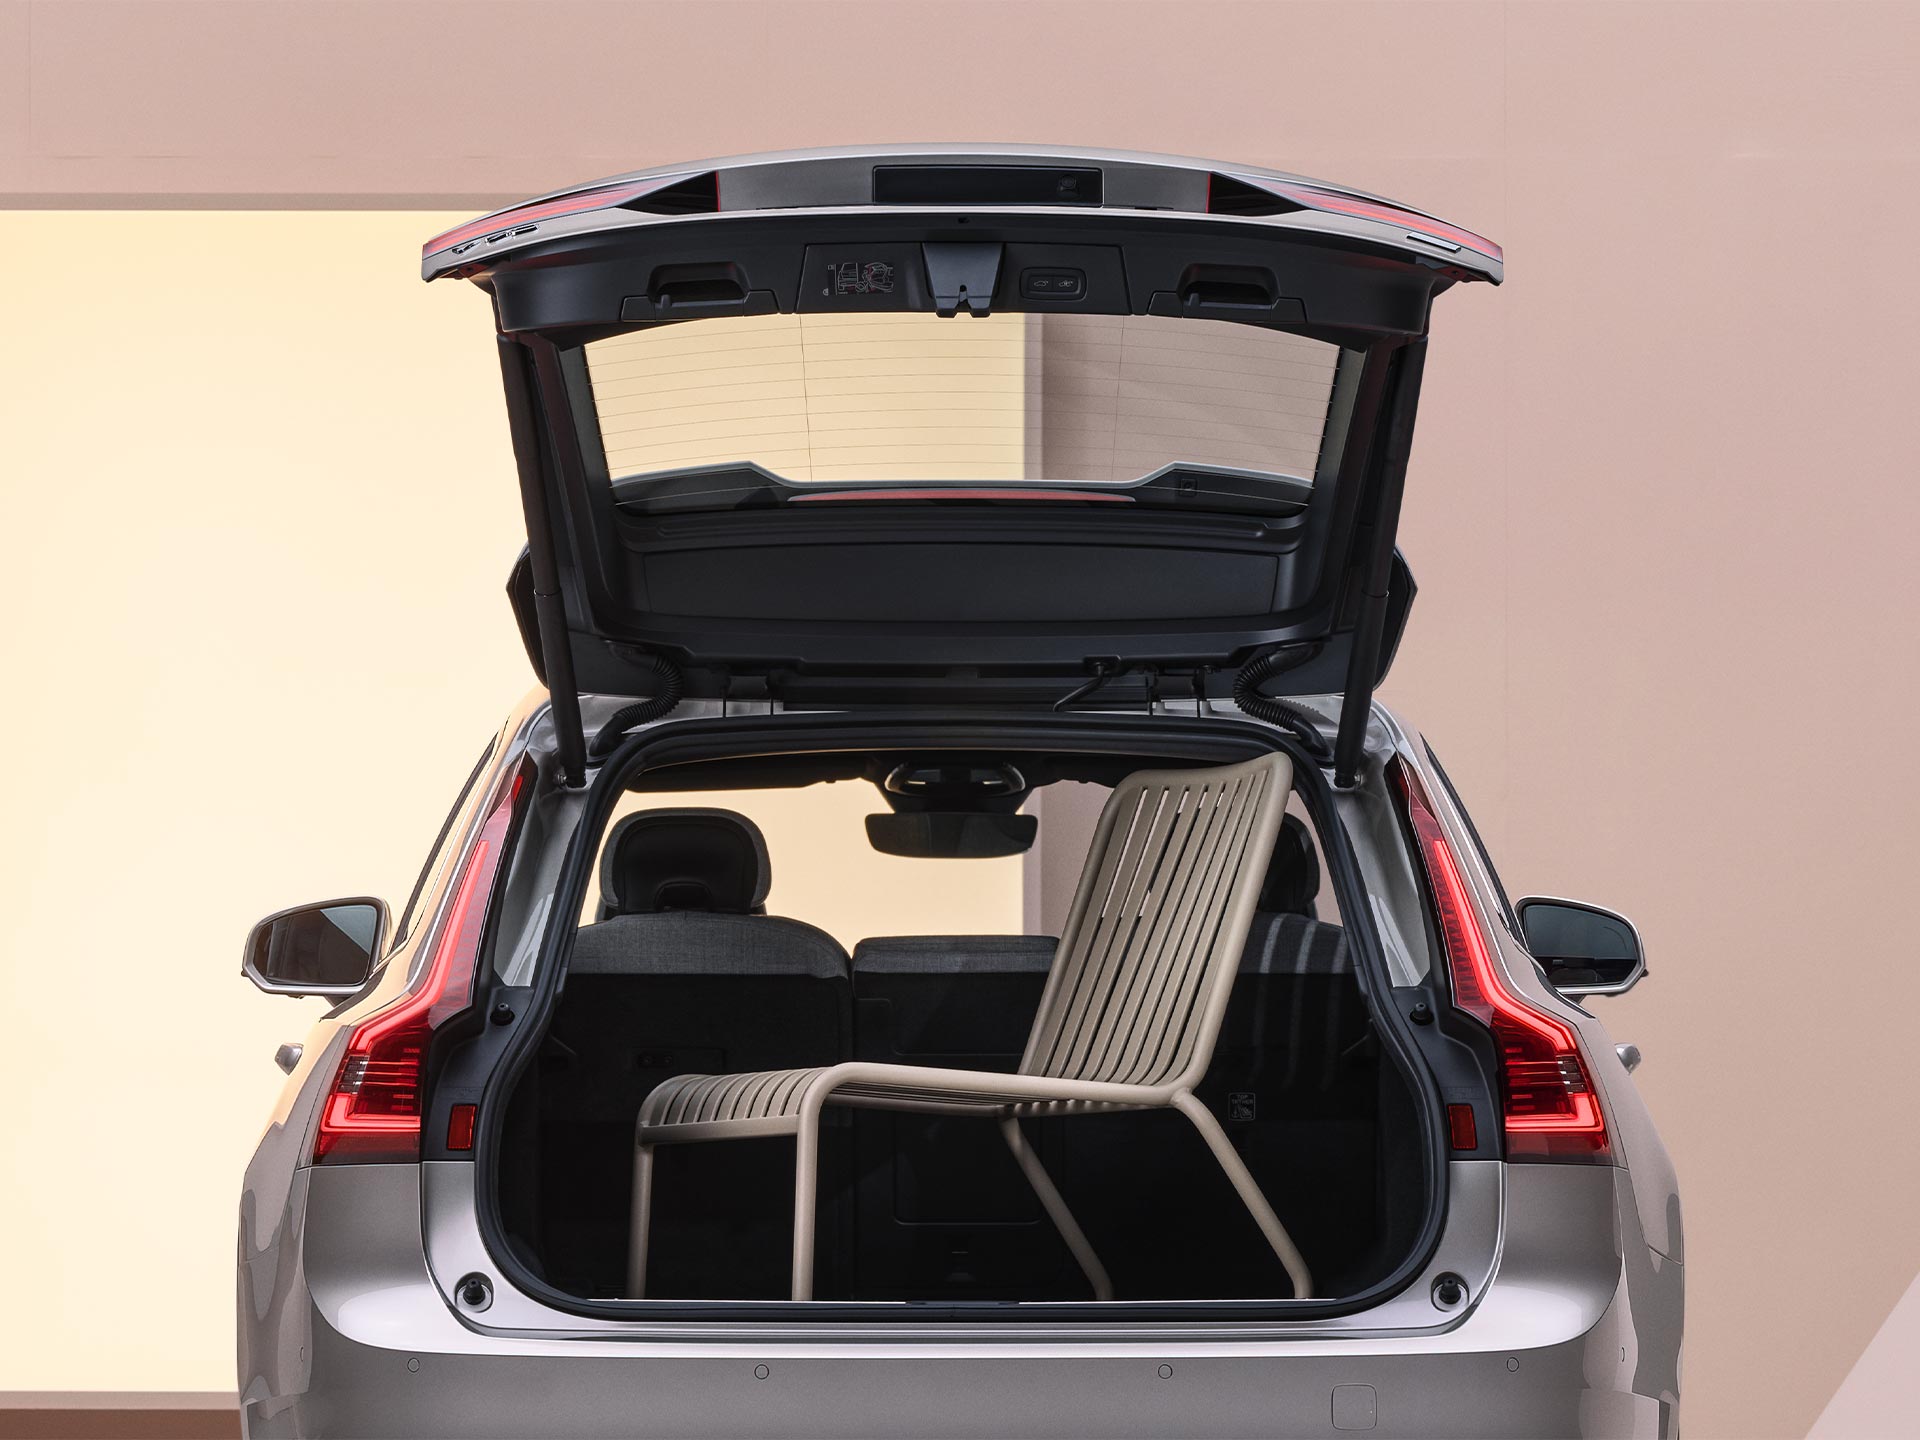 Le versatili opzioni di carico e seduta unite al design spaziosi in una Volvo V90 station wagon.